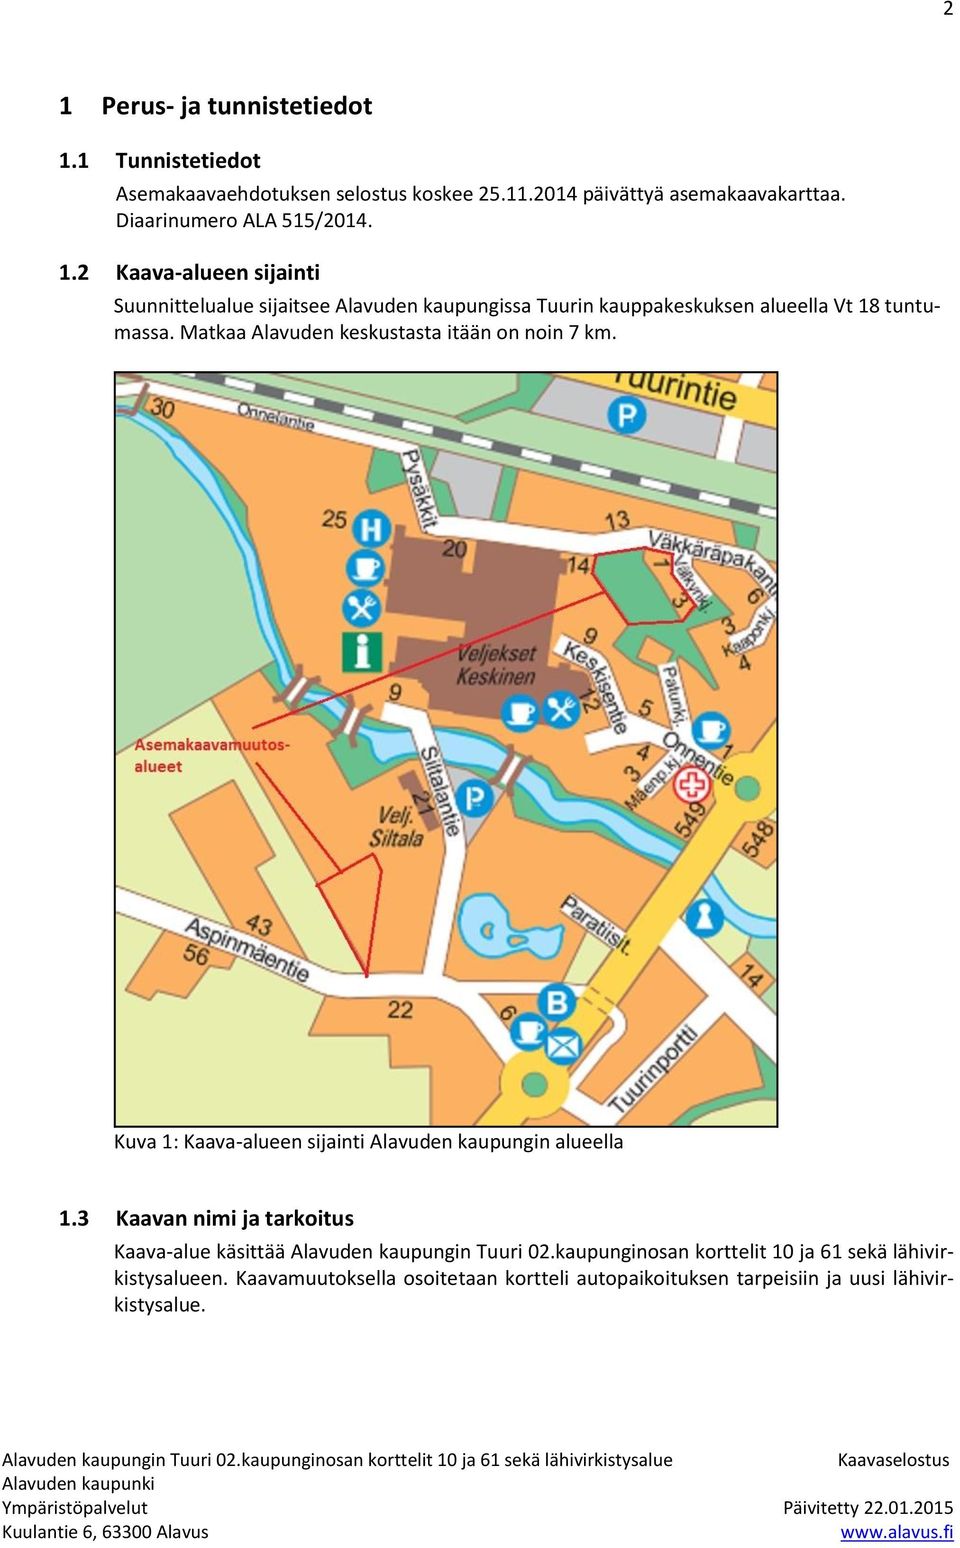 2 Kaava-alueen sijainti Suunnittelualue sijaitsee Alavuden kaupungissa Tuurin kauppakeskuksen alueella Vt 18 tuntumassa.